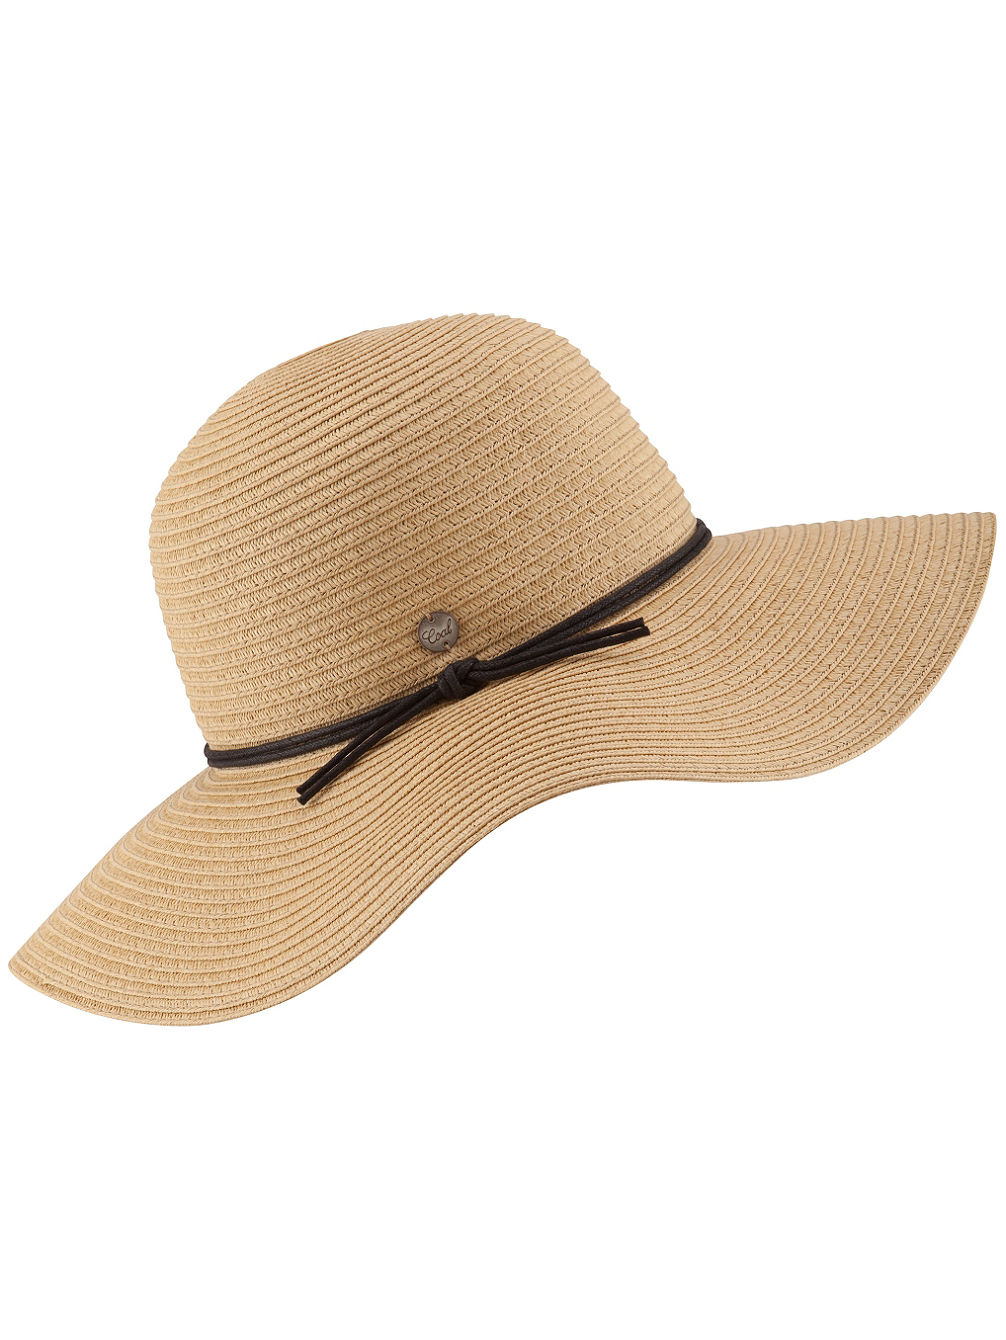 The Seaside Hat